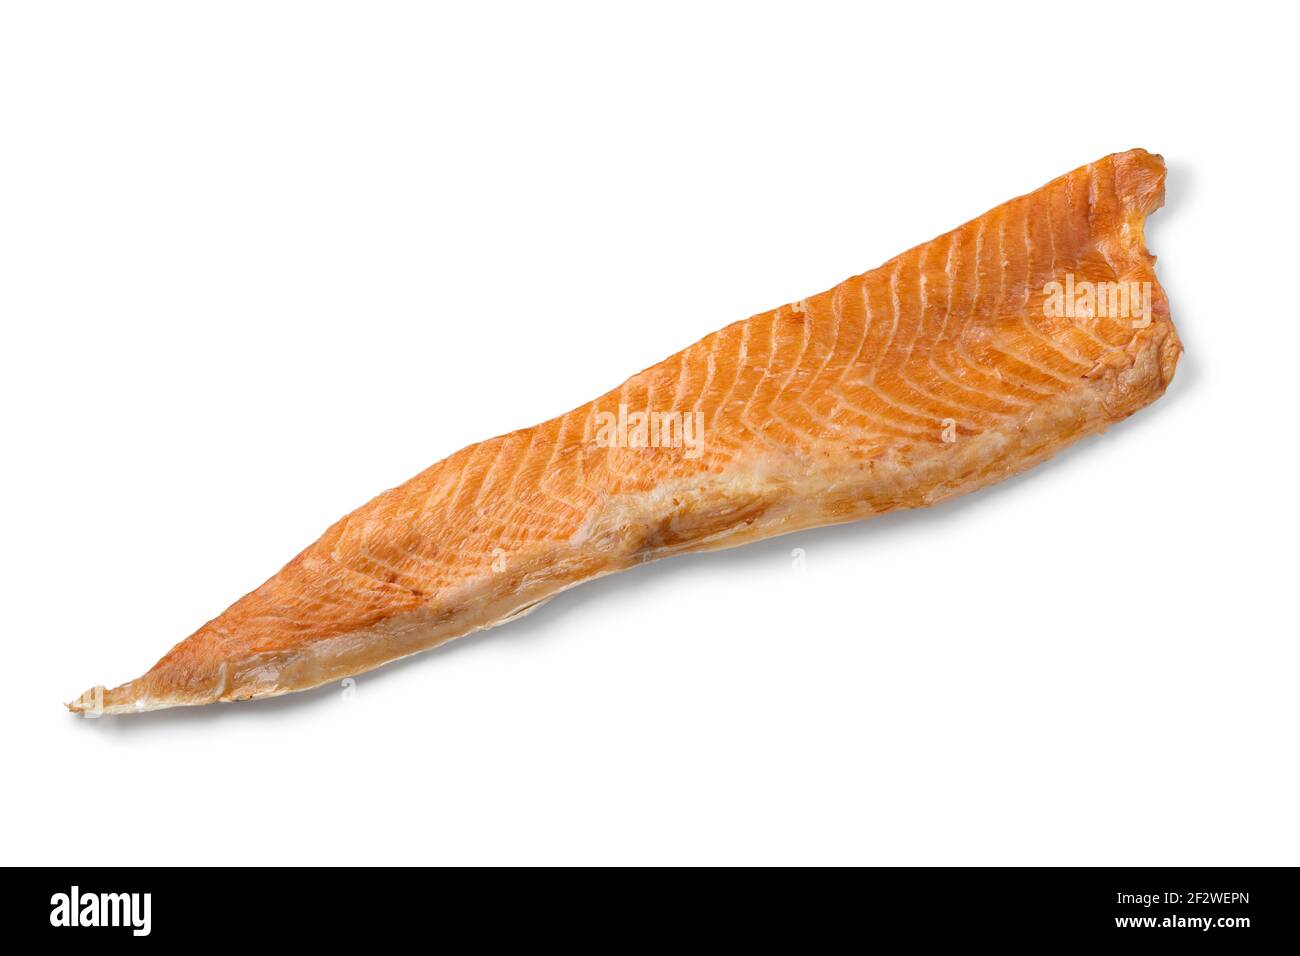 Une seule queue de saumon fumé isolée sur fond blanc Banque D'Images